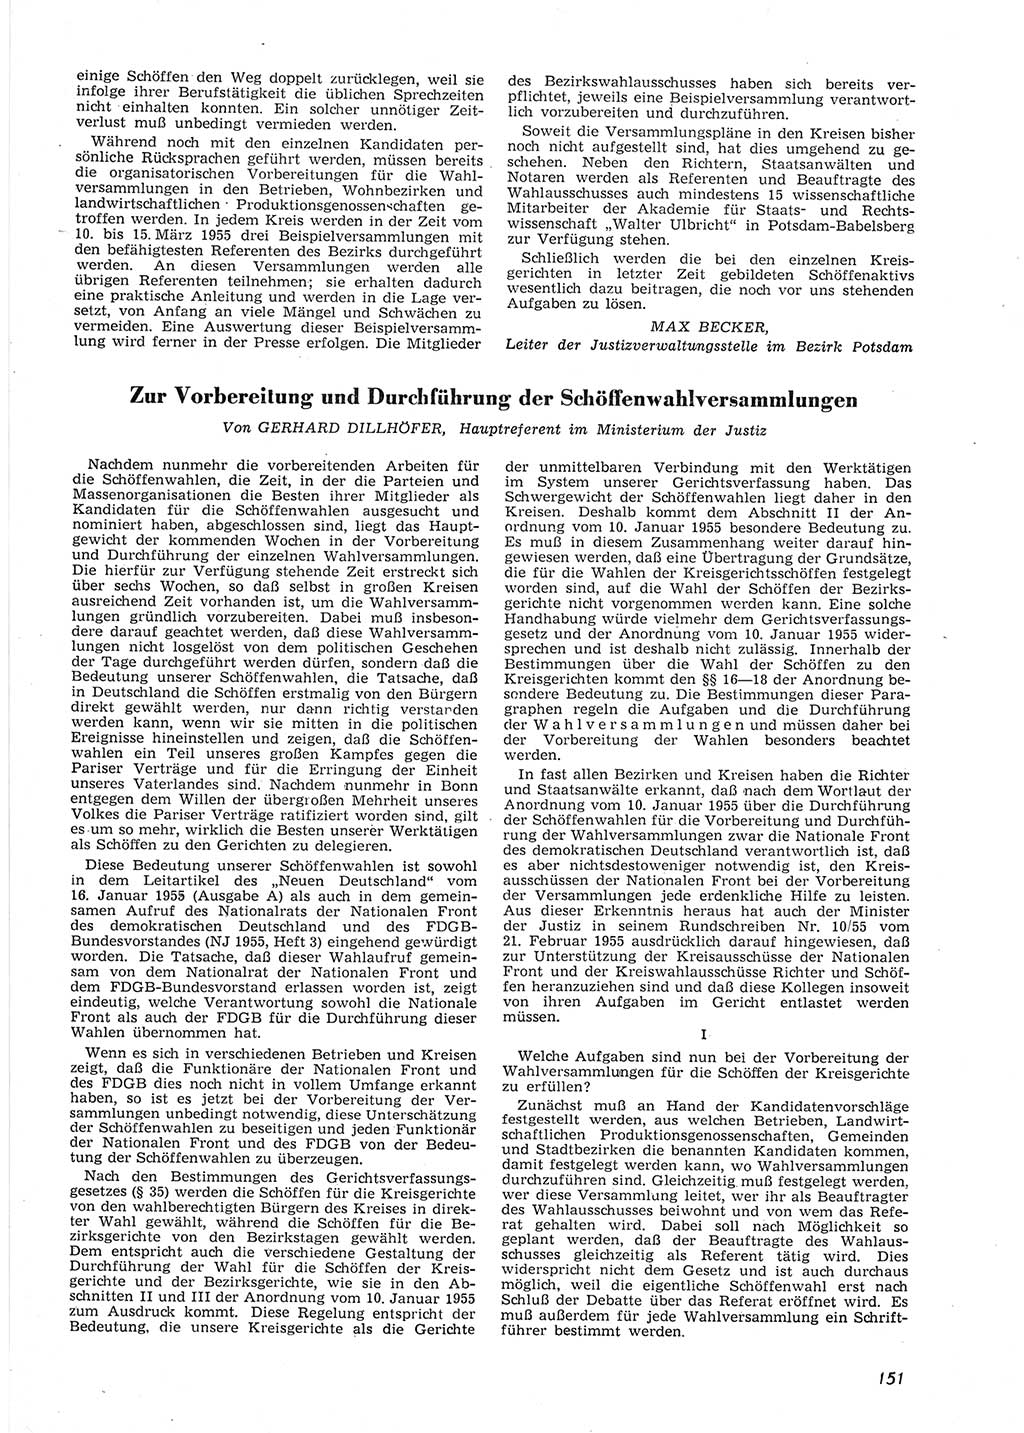 Neue Justiz (NJ), Zeitschrift für Recht und Rechtswissenschaft [Deutsche Demokratische Republik (DDR)], 9. Jahrgang 1955, Seite 151 (NJ DDR 1955, S. 151)